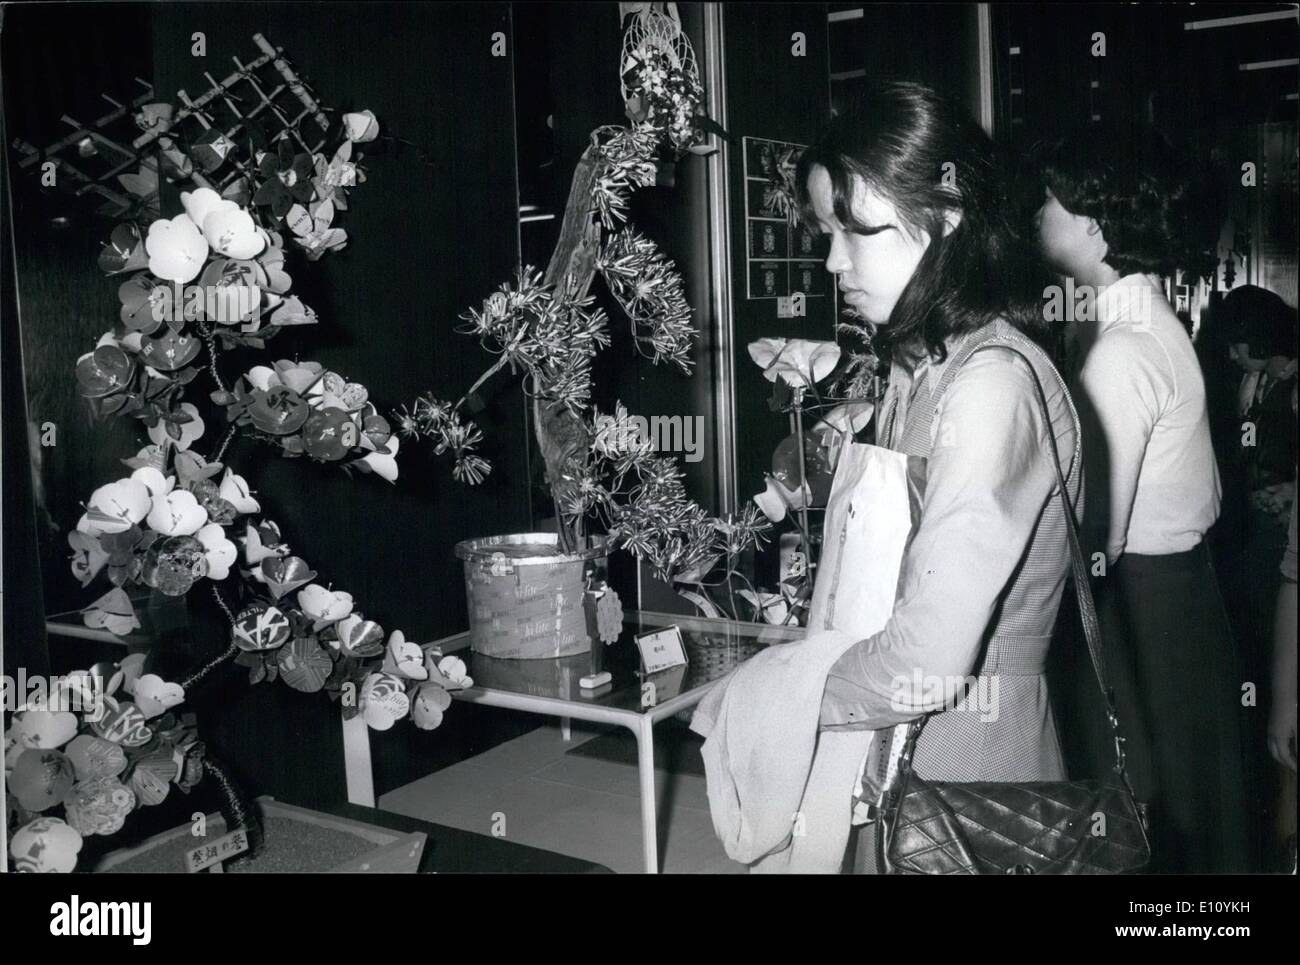 El 10 de octubre, 1974 - flores y árboles de los paquetes de cigarrillos vacíos. Flores y árboles artificiales hechas con los paquetes de cigarrillos vacíos, están siendo exhibidos en el hall de la estación de Shinjuku en Tokio. Aparte de la novedad, y el uso de materiales de desecho, puede animar a la gente a hacer decoraciones similares, en lugar de arrojar paquetes vacíos lejos añadiendo a los problemas de contaminación de la ciudad. Foto: L A R: Un ciruelo en flor, y un pino entre el paquete de cigarrillos exposiciones. Foto de stock